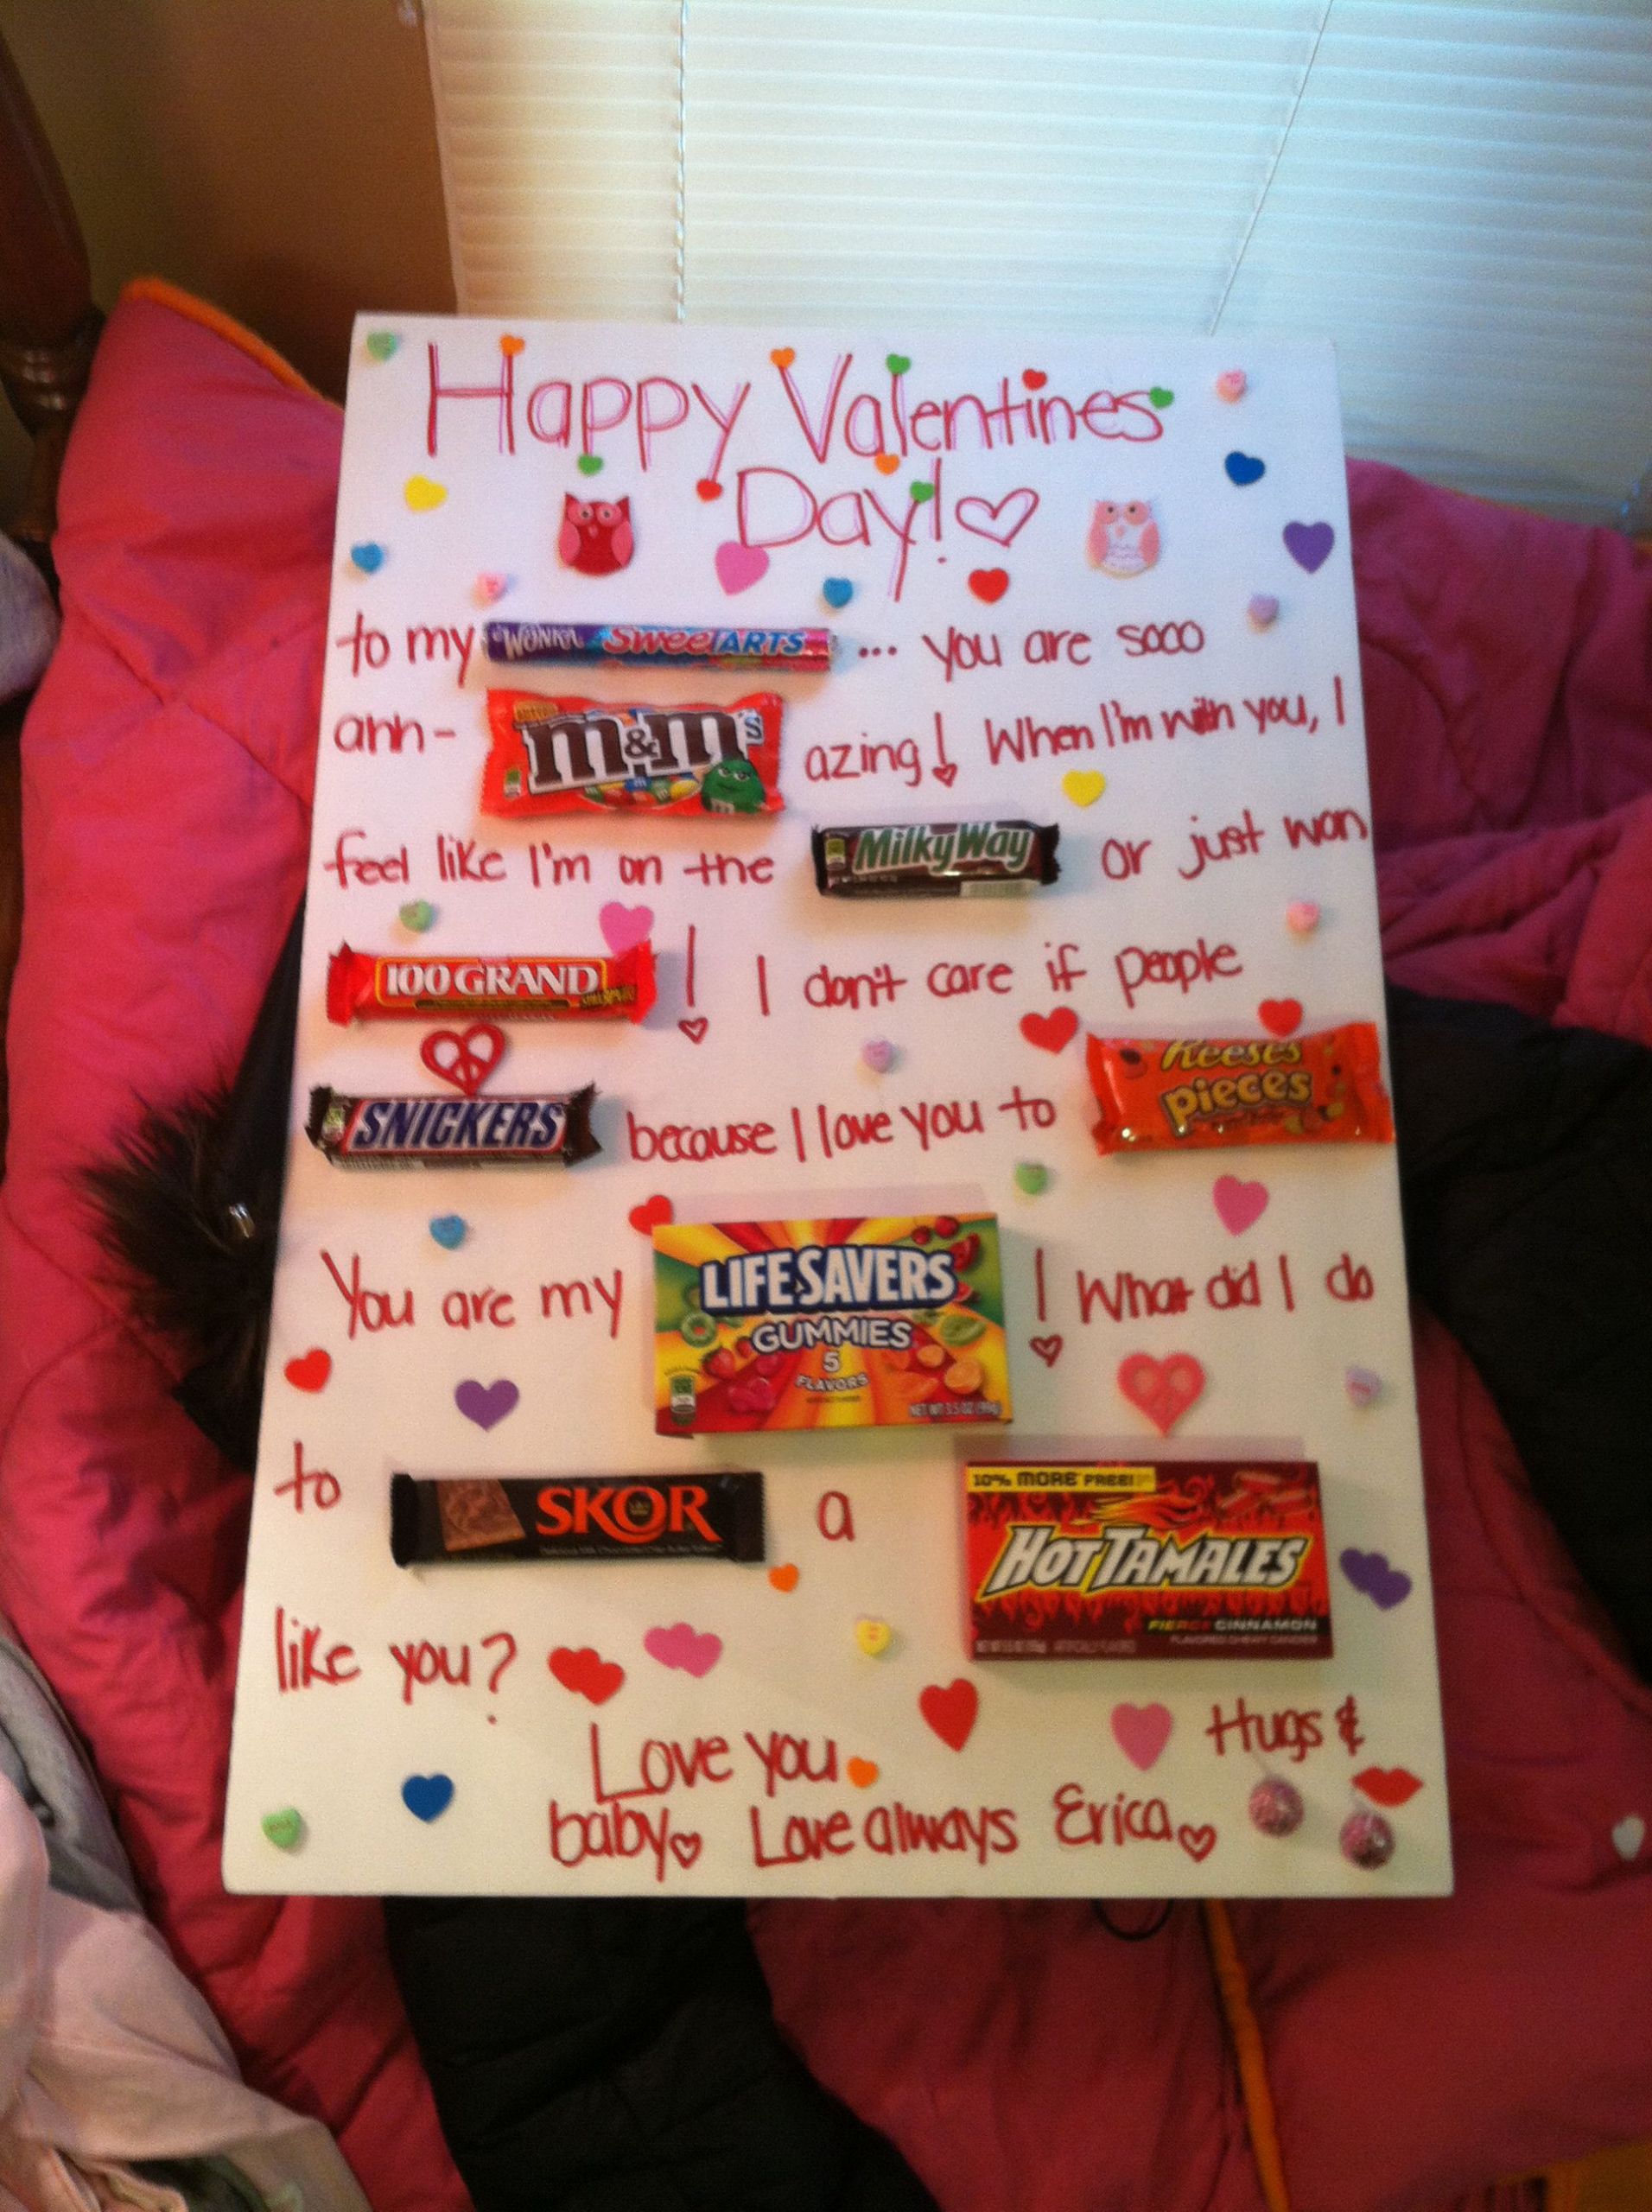 Good Valentines Day Gift Ideas Boyfriend
 Made for my boyfriend on valentines day